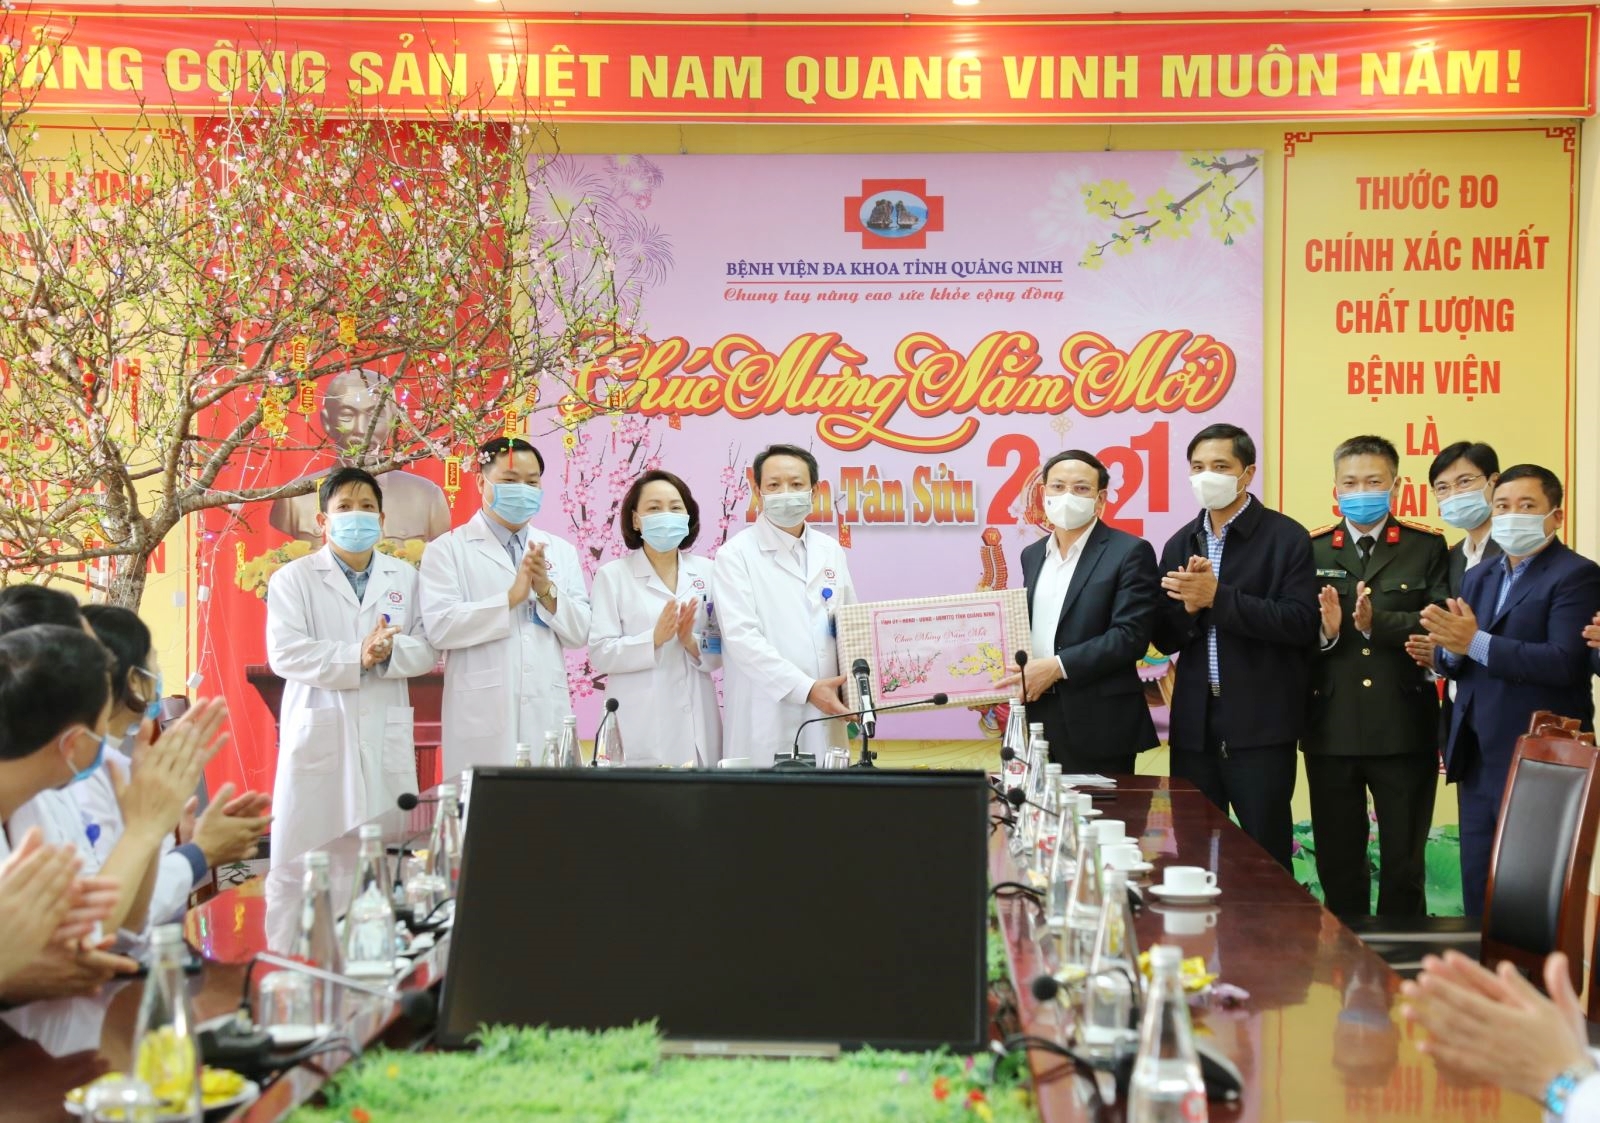 í thư Tỉnh ủy Nguyễn Xuân Ký tặng quà cho tập thể cán bộ y, bác sỹ tại Bệnh viện Đa khoa tỉnh nhân dịp năm mới.